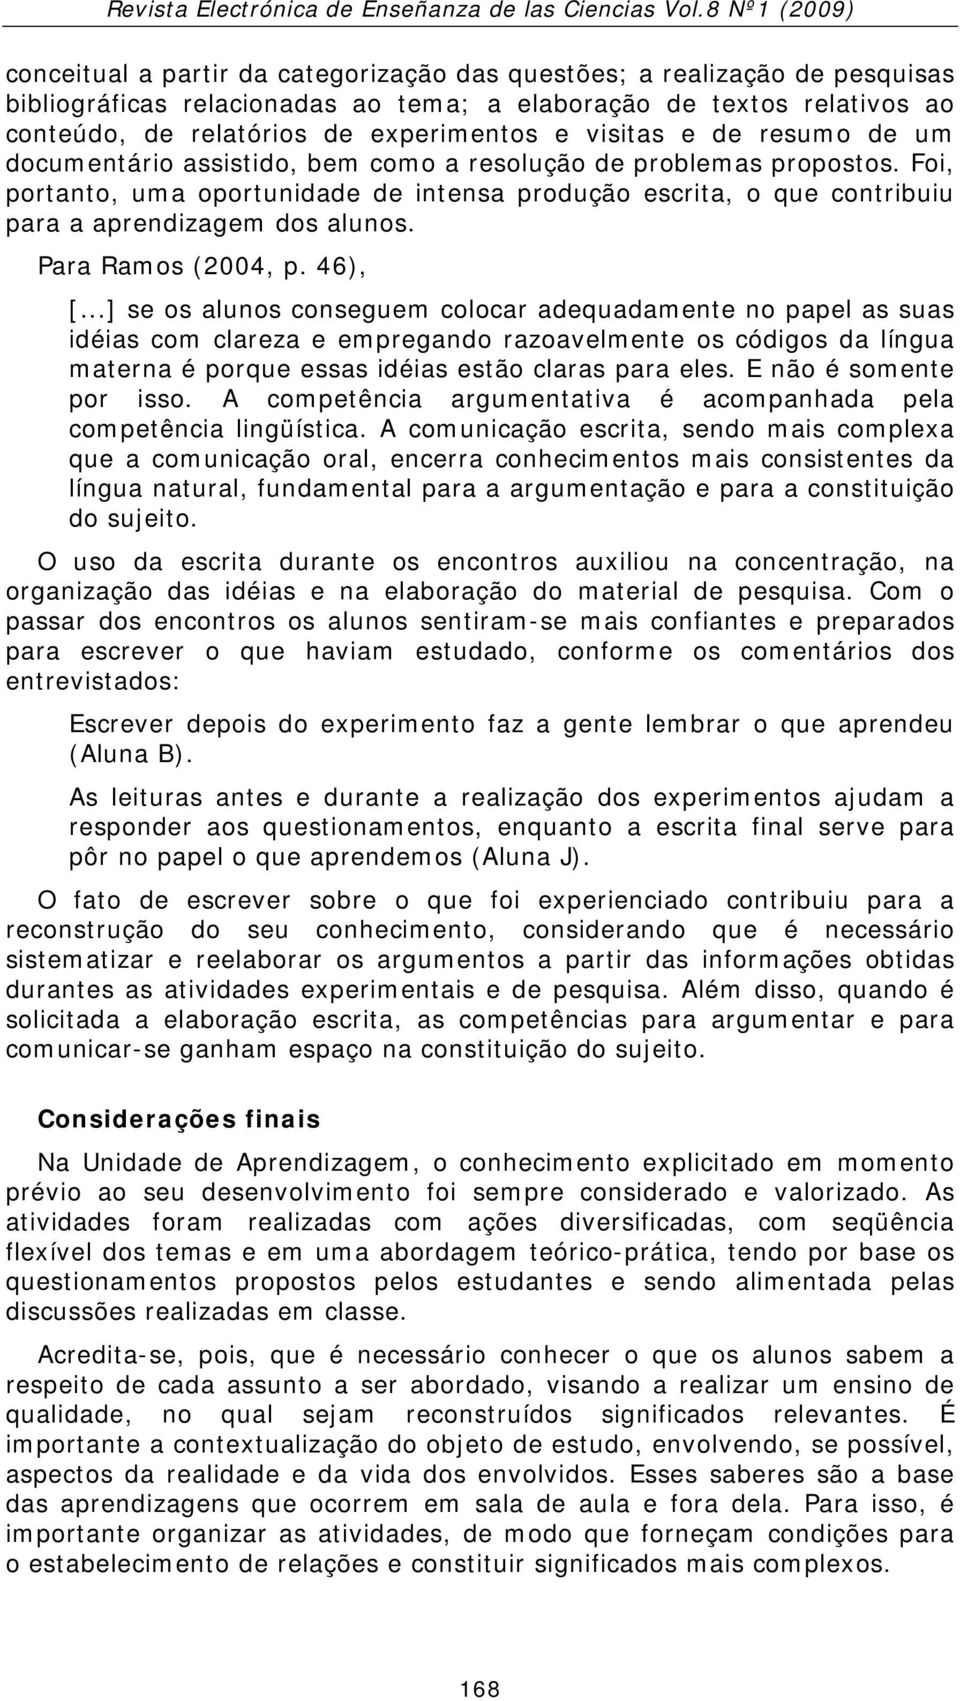 Para Ramos (2004, p. 46), [.